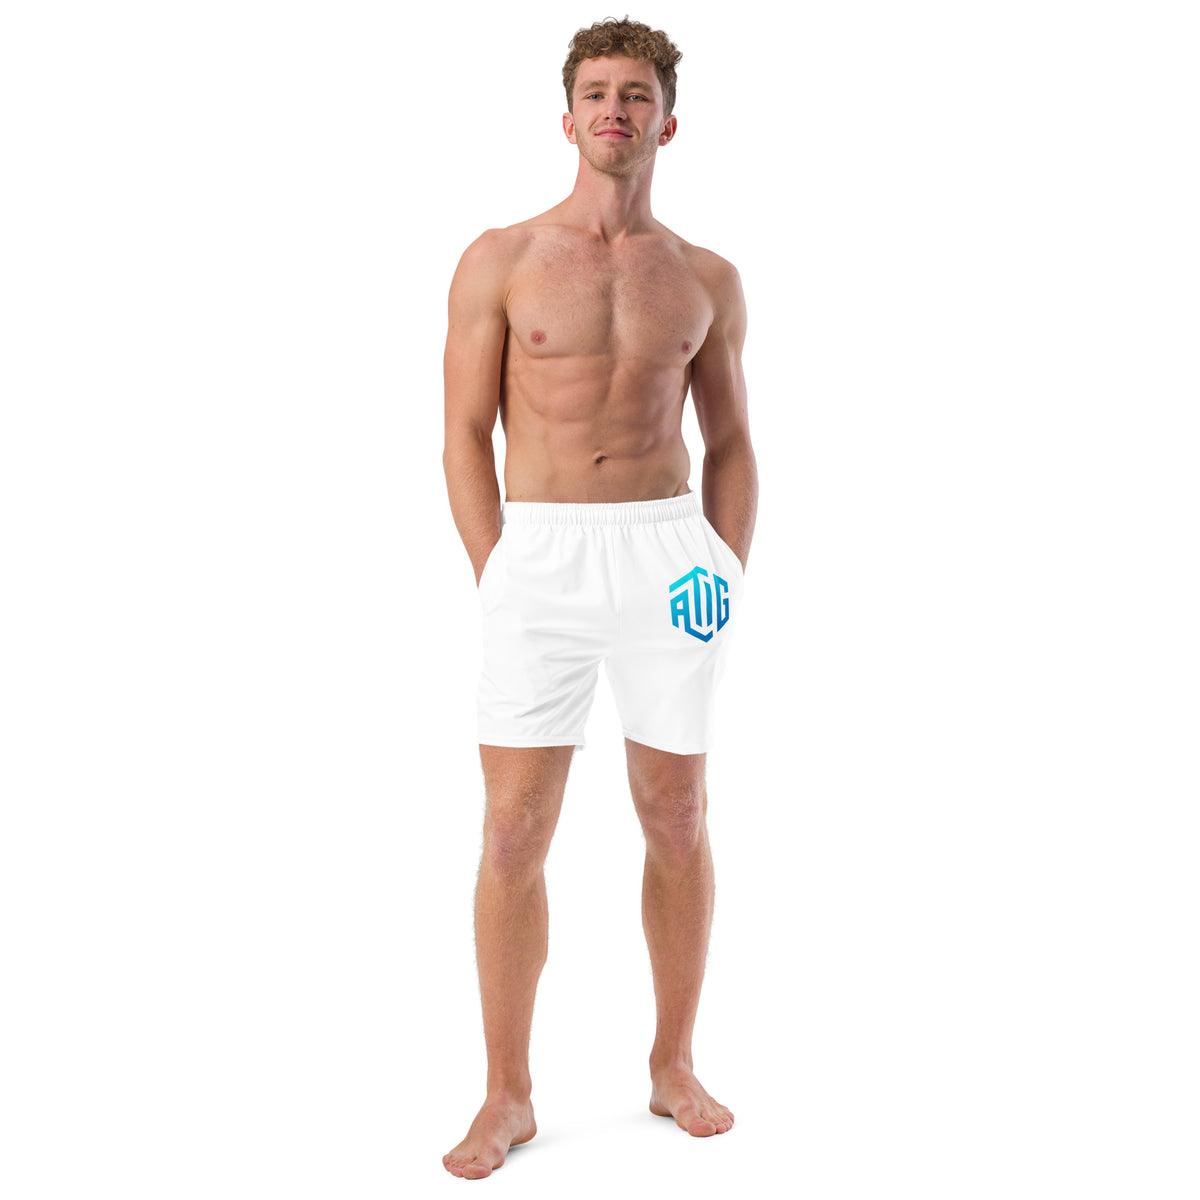 ATIG Men's swim trunks